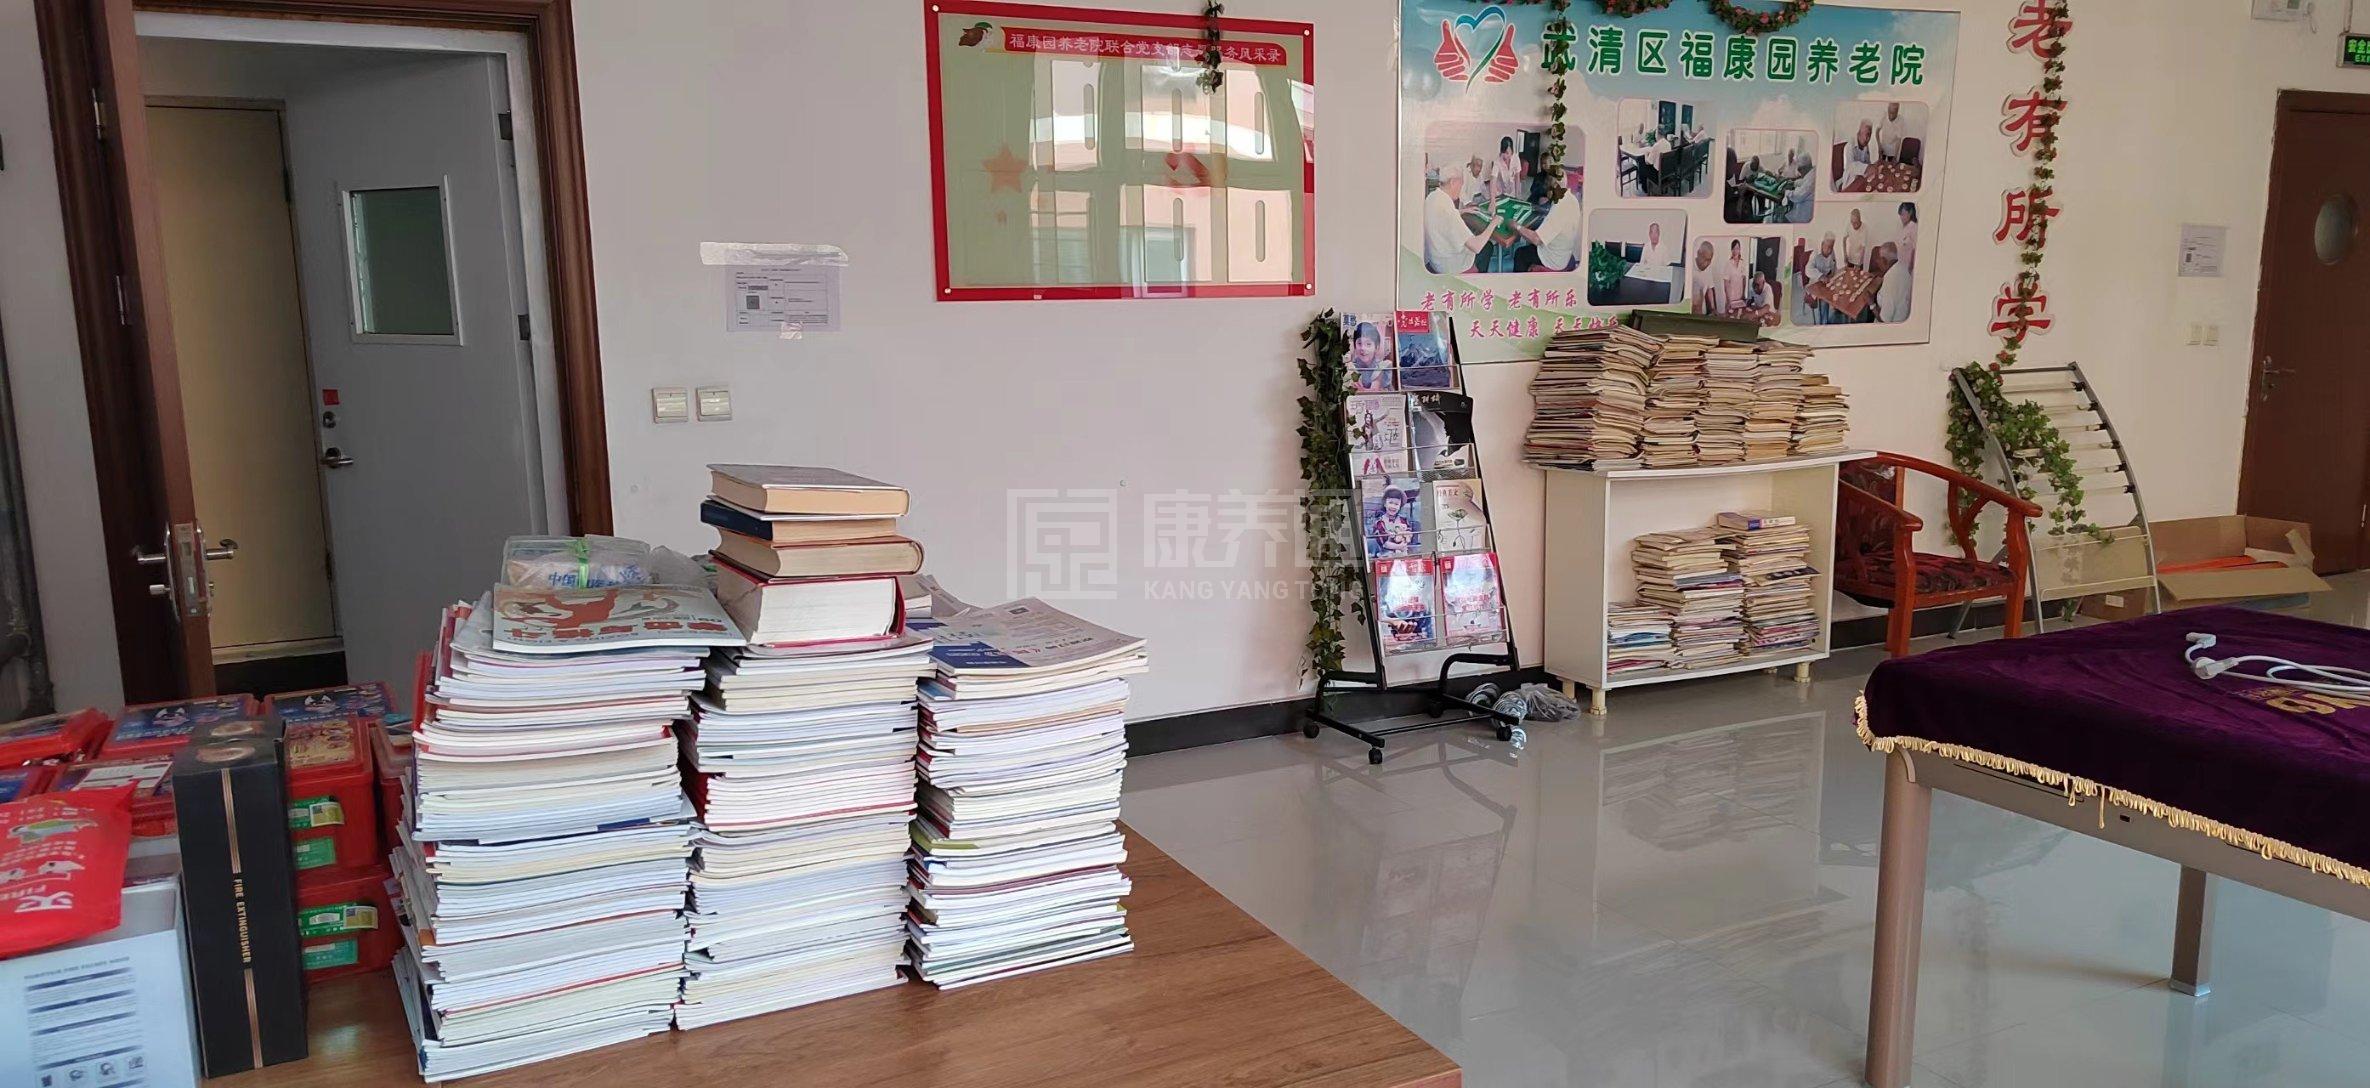 天津市武清区福康园养老院服务项目图4让长者主动而自立地生活